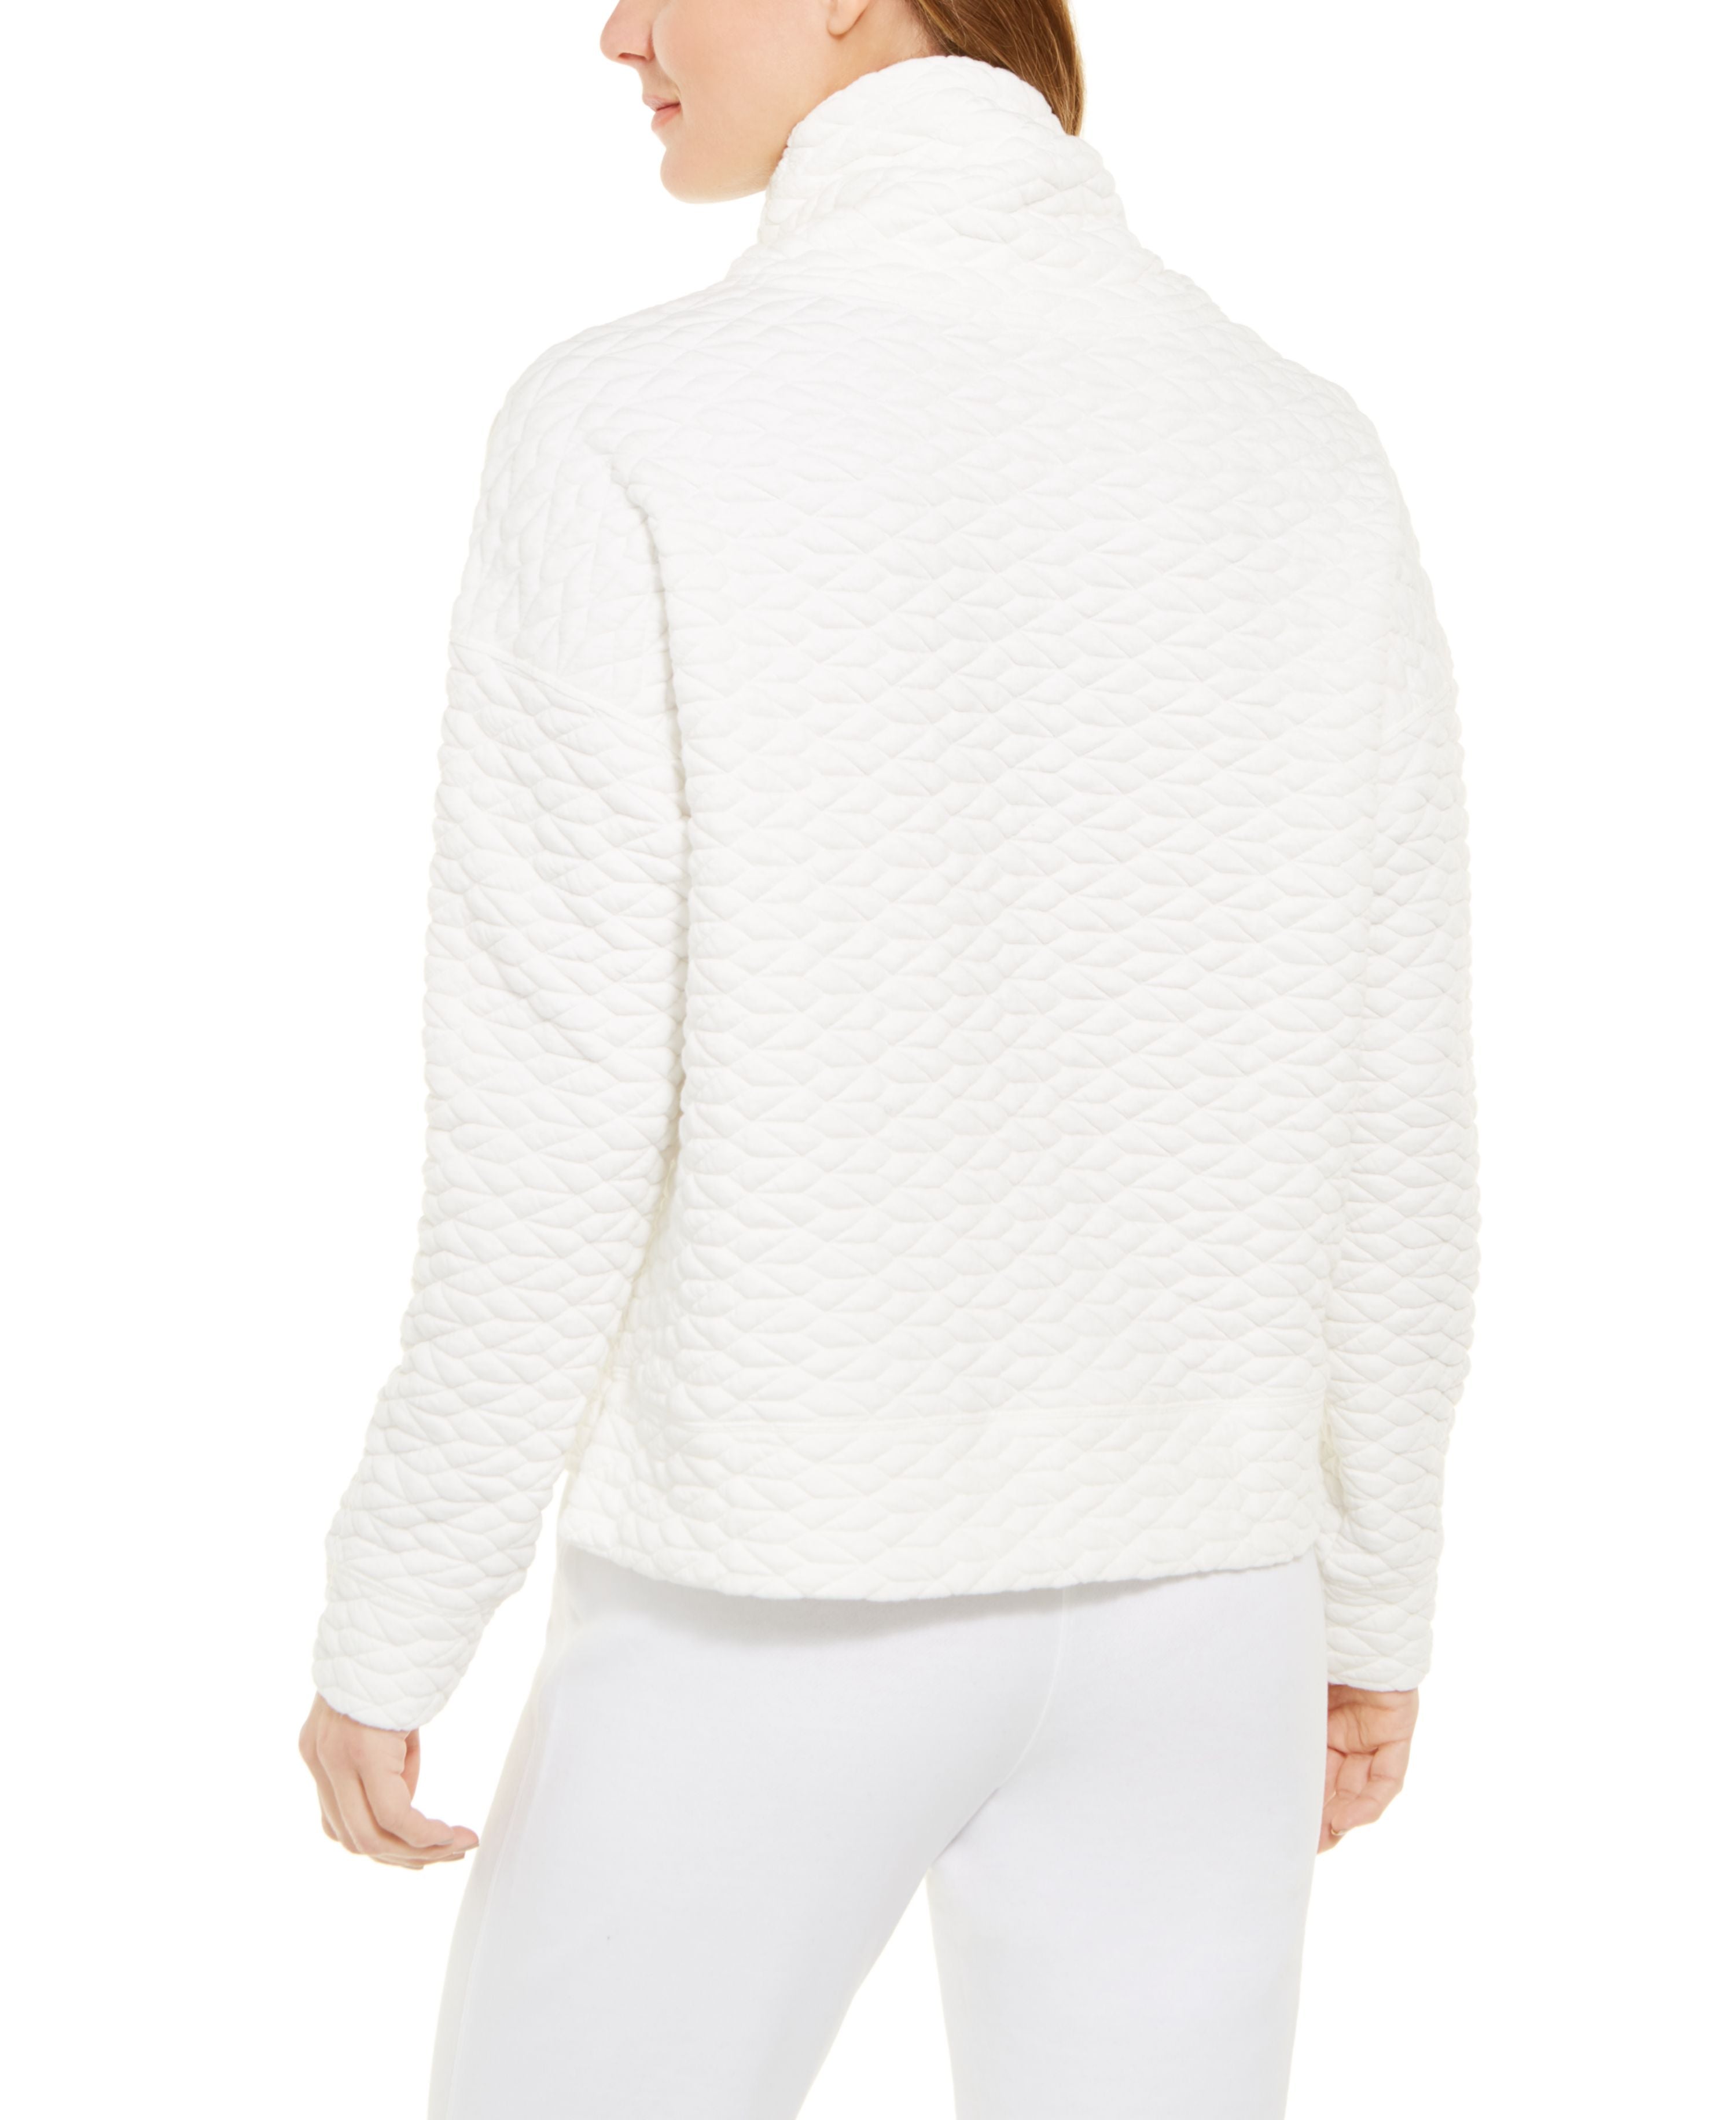 Calvin Klein Womens Performance Quilted Cowlneck Sweatshirt